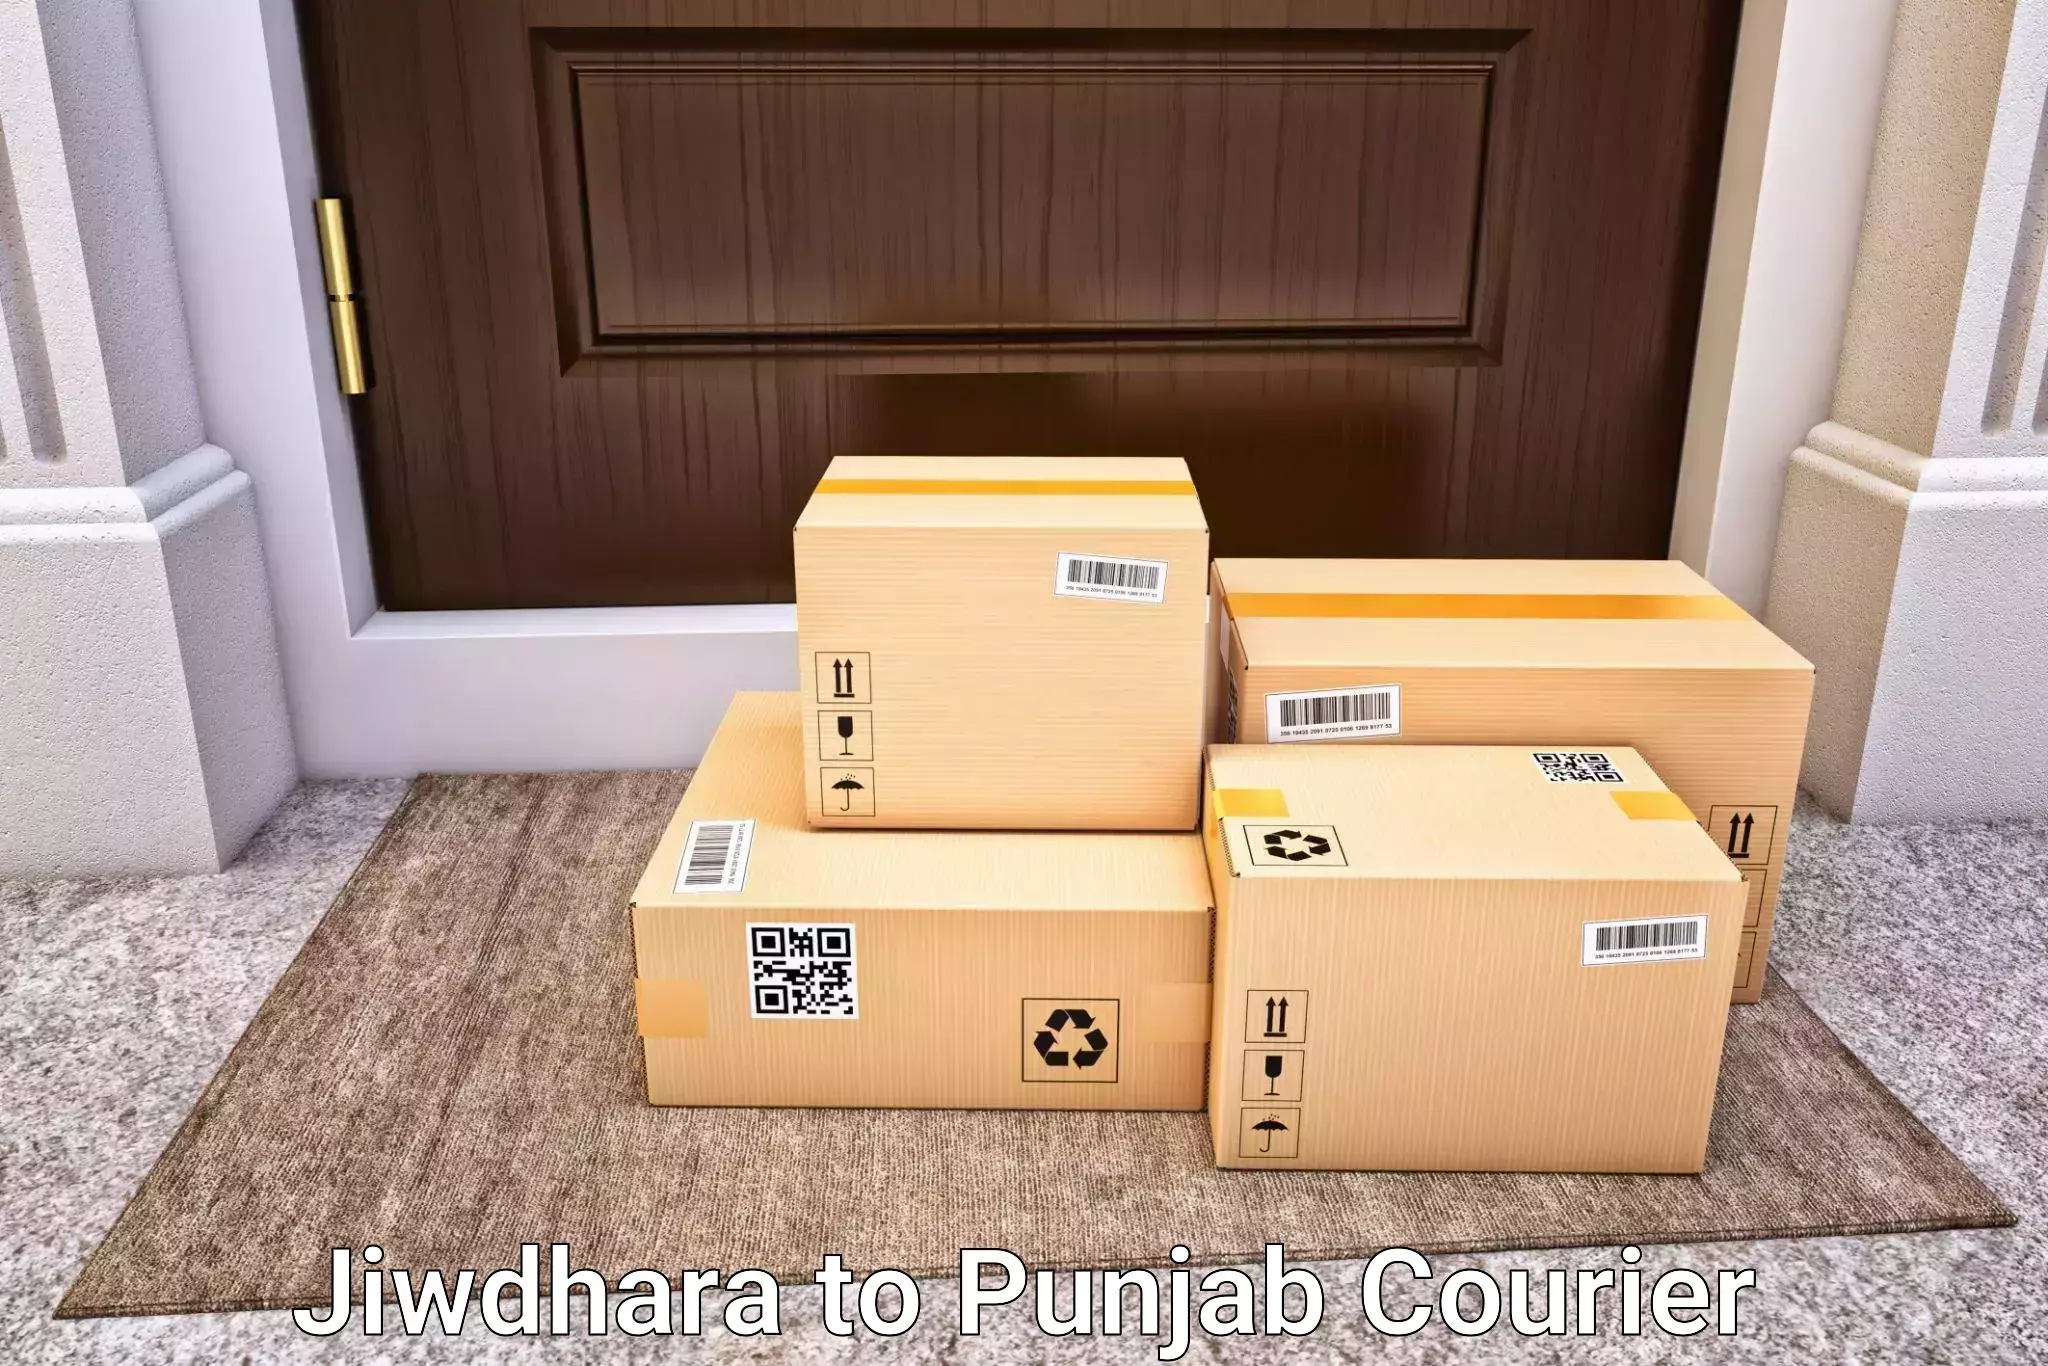 Affordable baggage delivery Jiwdhara to Ajnala